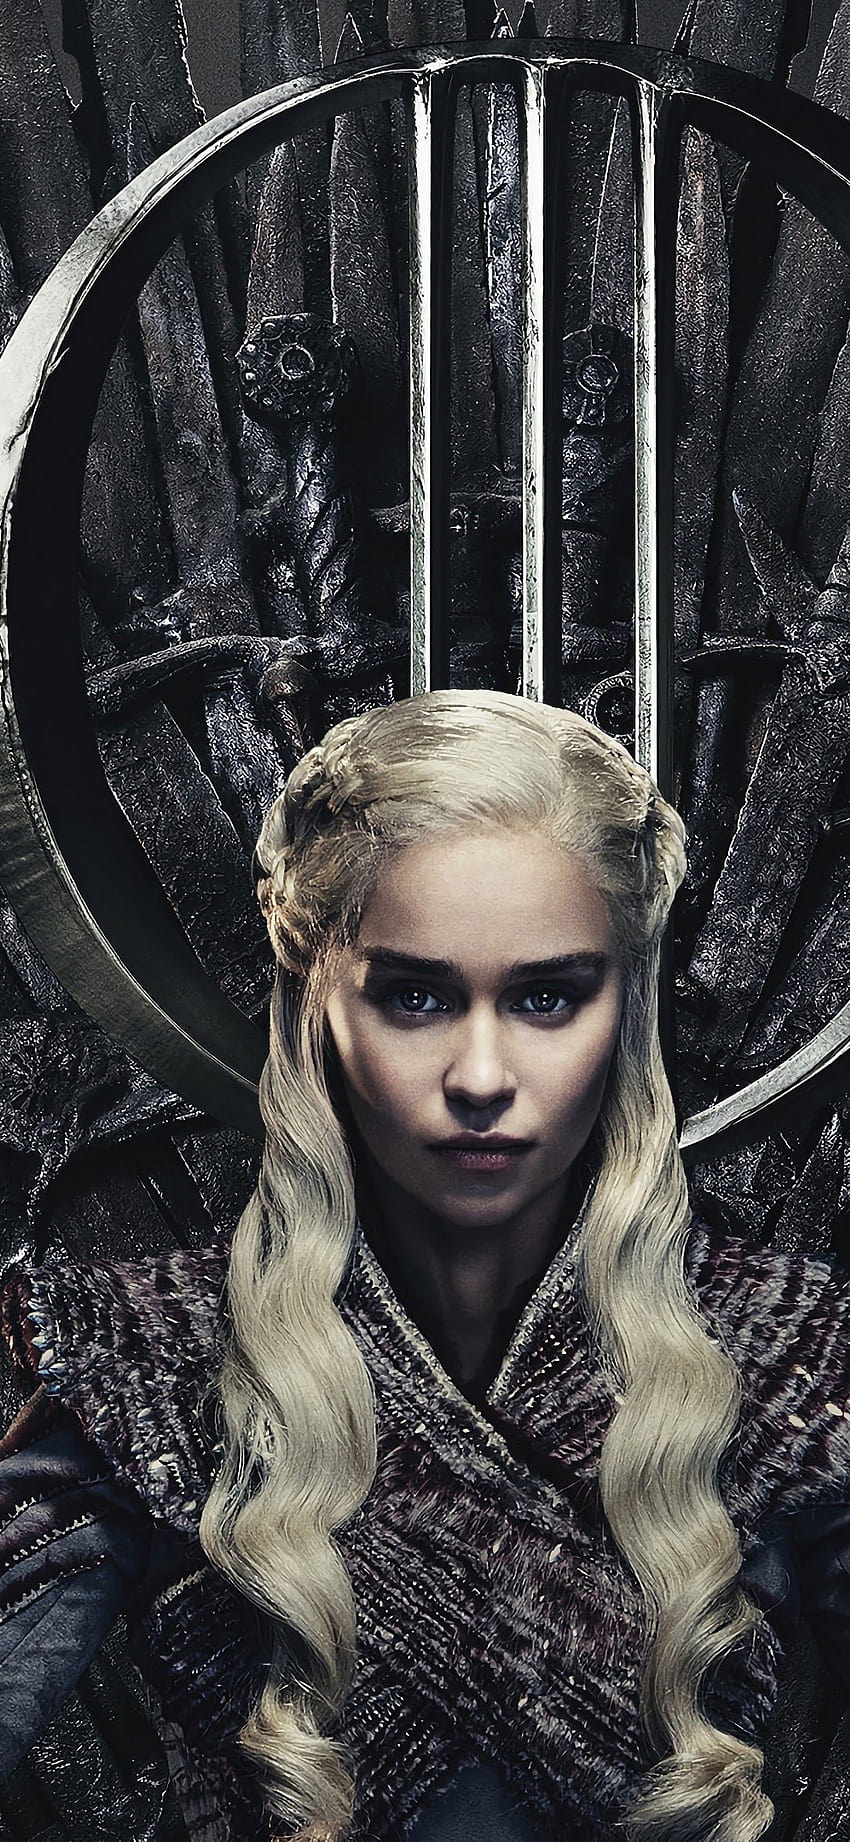 Daenerys Targaryen Juego de Tronos Temporada 8, daenerys targaryen retrato androide fondo de pantalla del teléfono